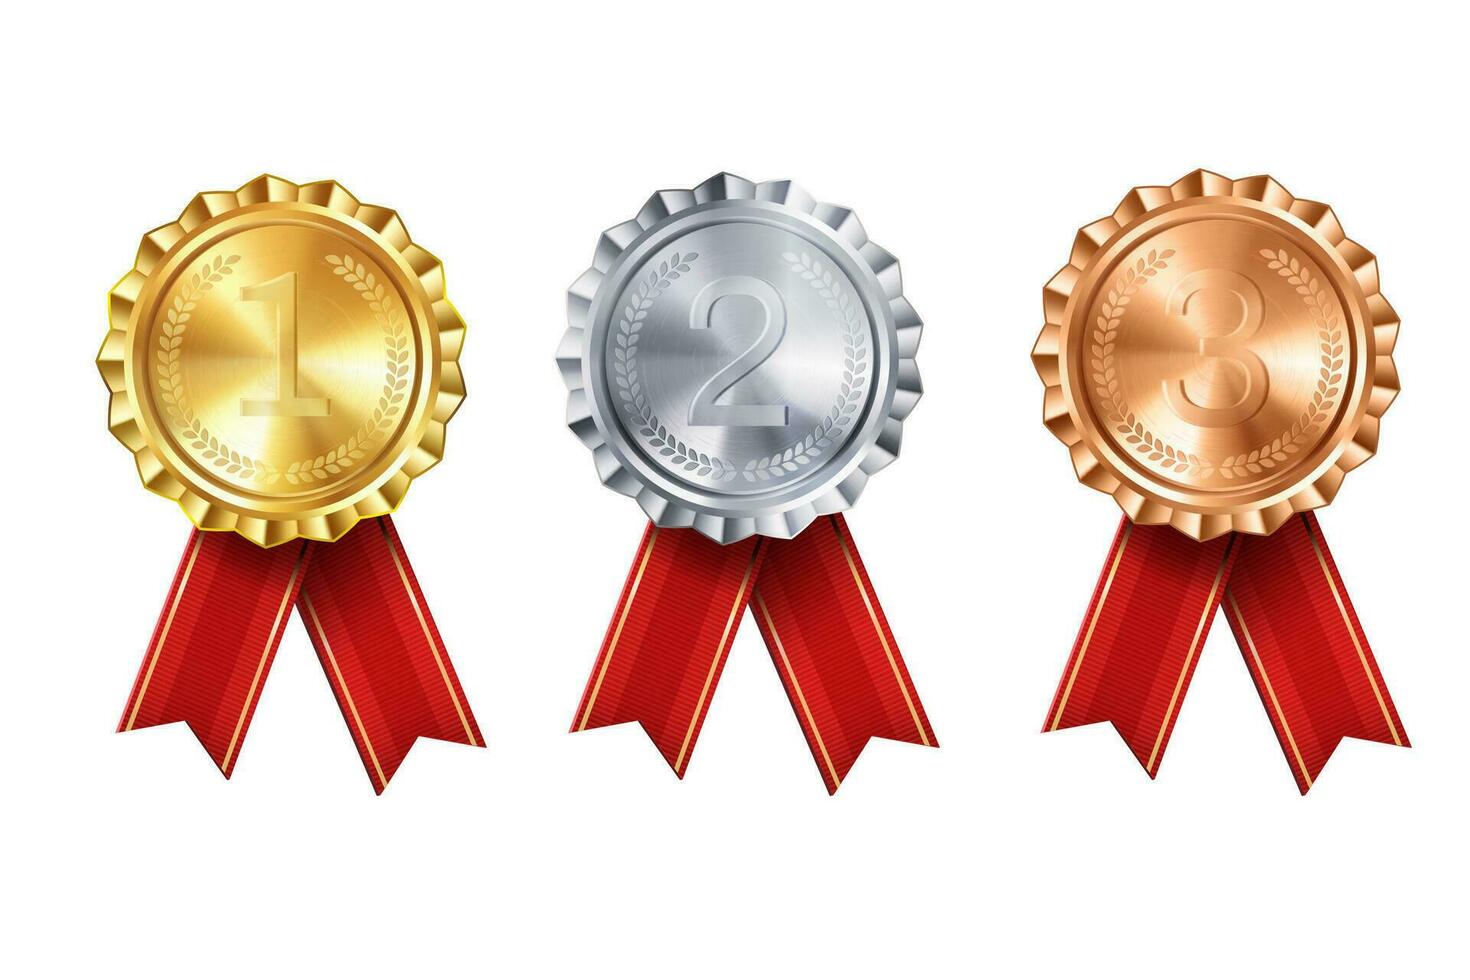 realistisch verzameling van goud, zilver, en bronzen prijs medailles met rood lint rozetten en gegraveerde nummers. vector set. premie badges voor winnaars en prestaties